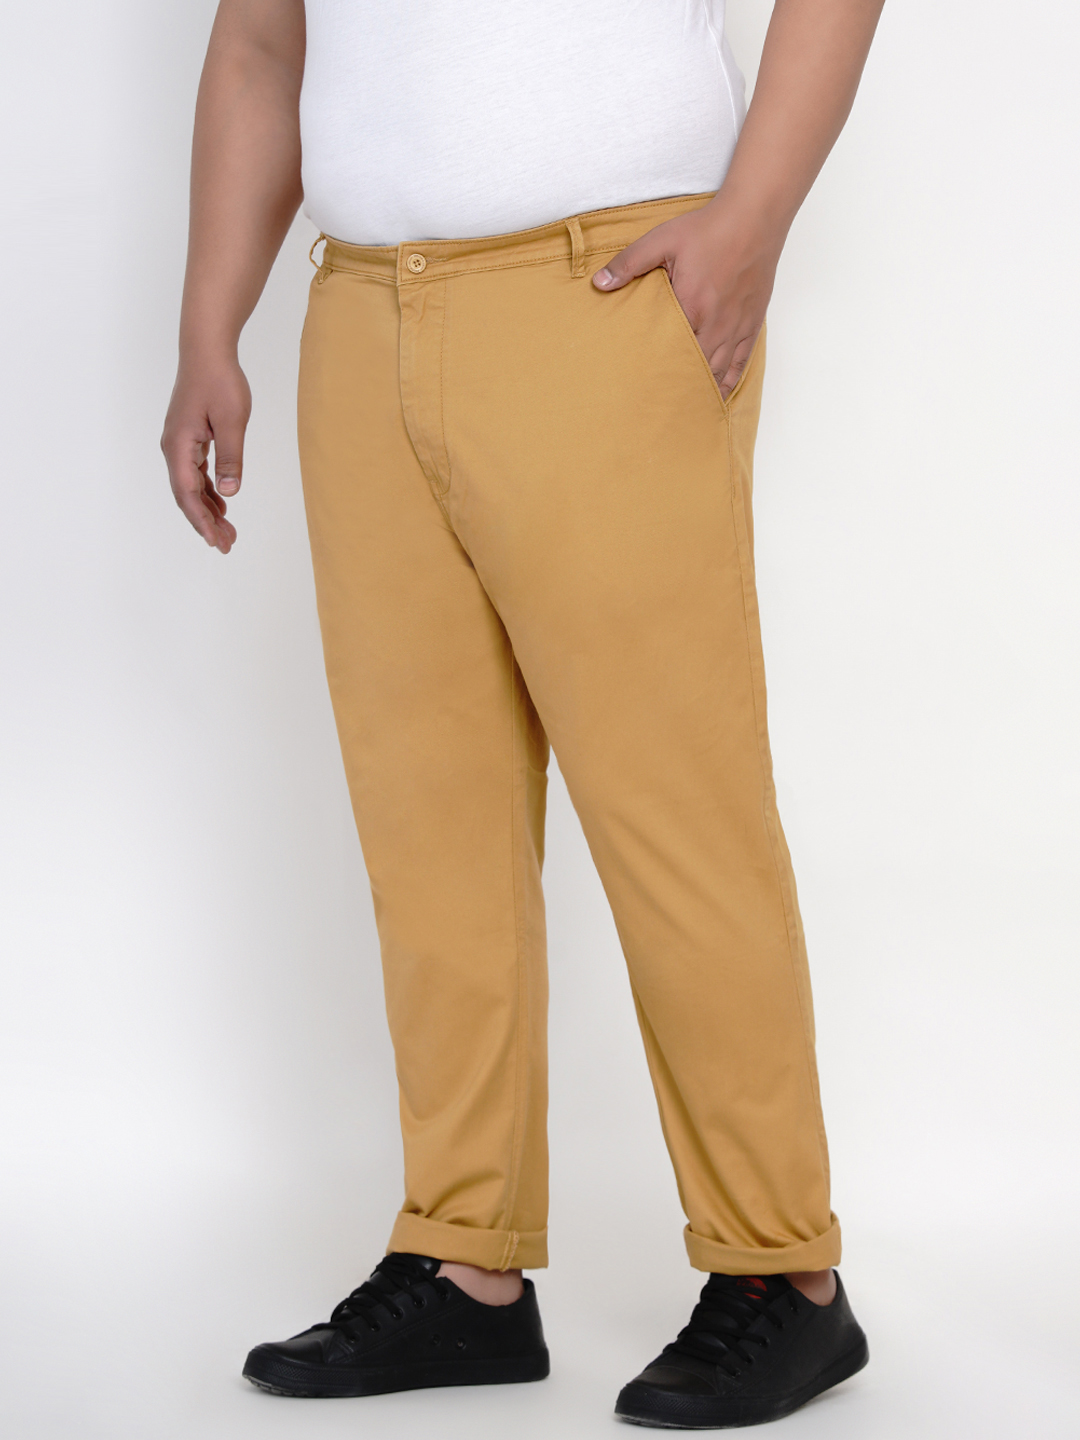 bottomwear/trousers/JPTR2161A/jptr2161a-4.jpg